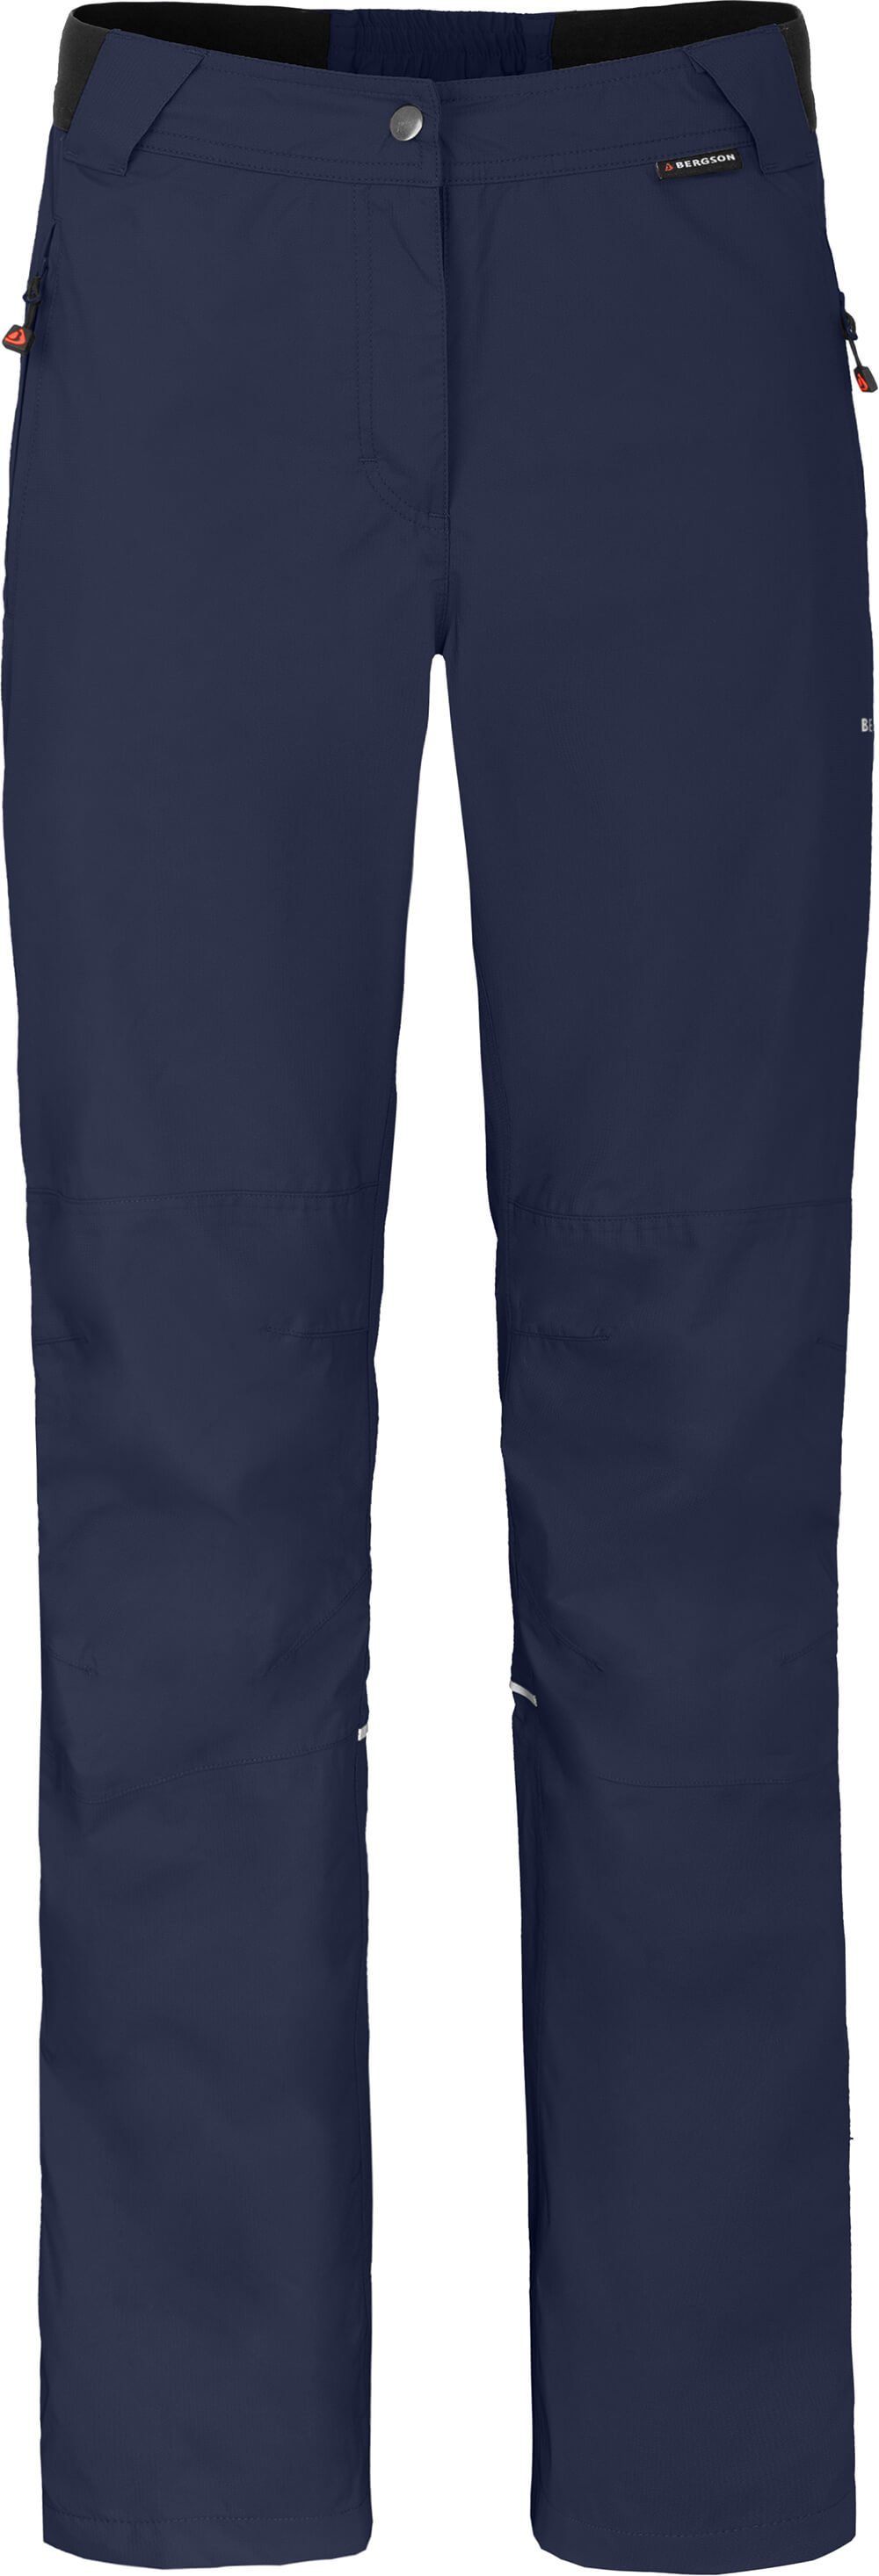 Bergson Regenhose LYNDE COMFORT Damen Regenhose, Netzfutter, 12000 mm Wassersäule, Normalgrößen, peacoat blau